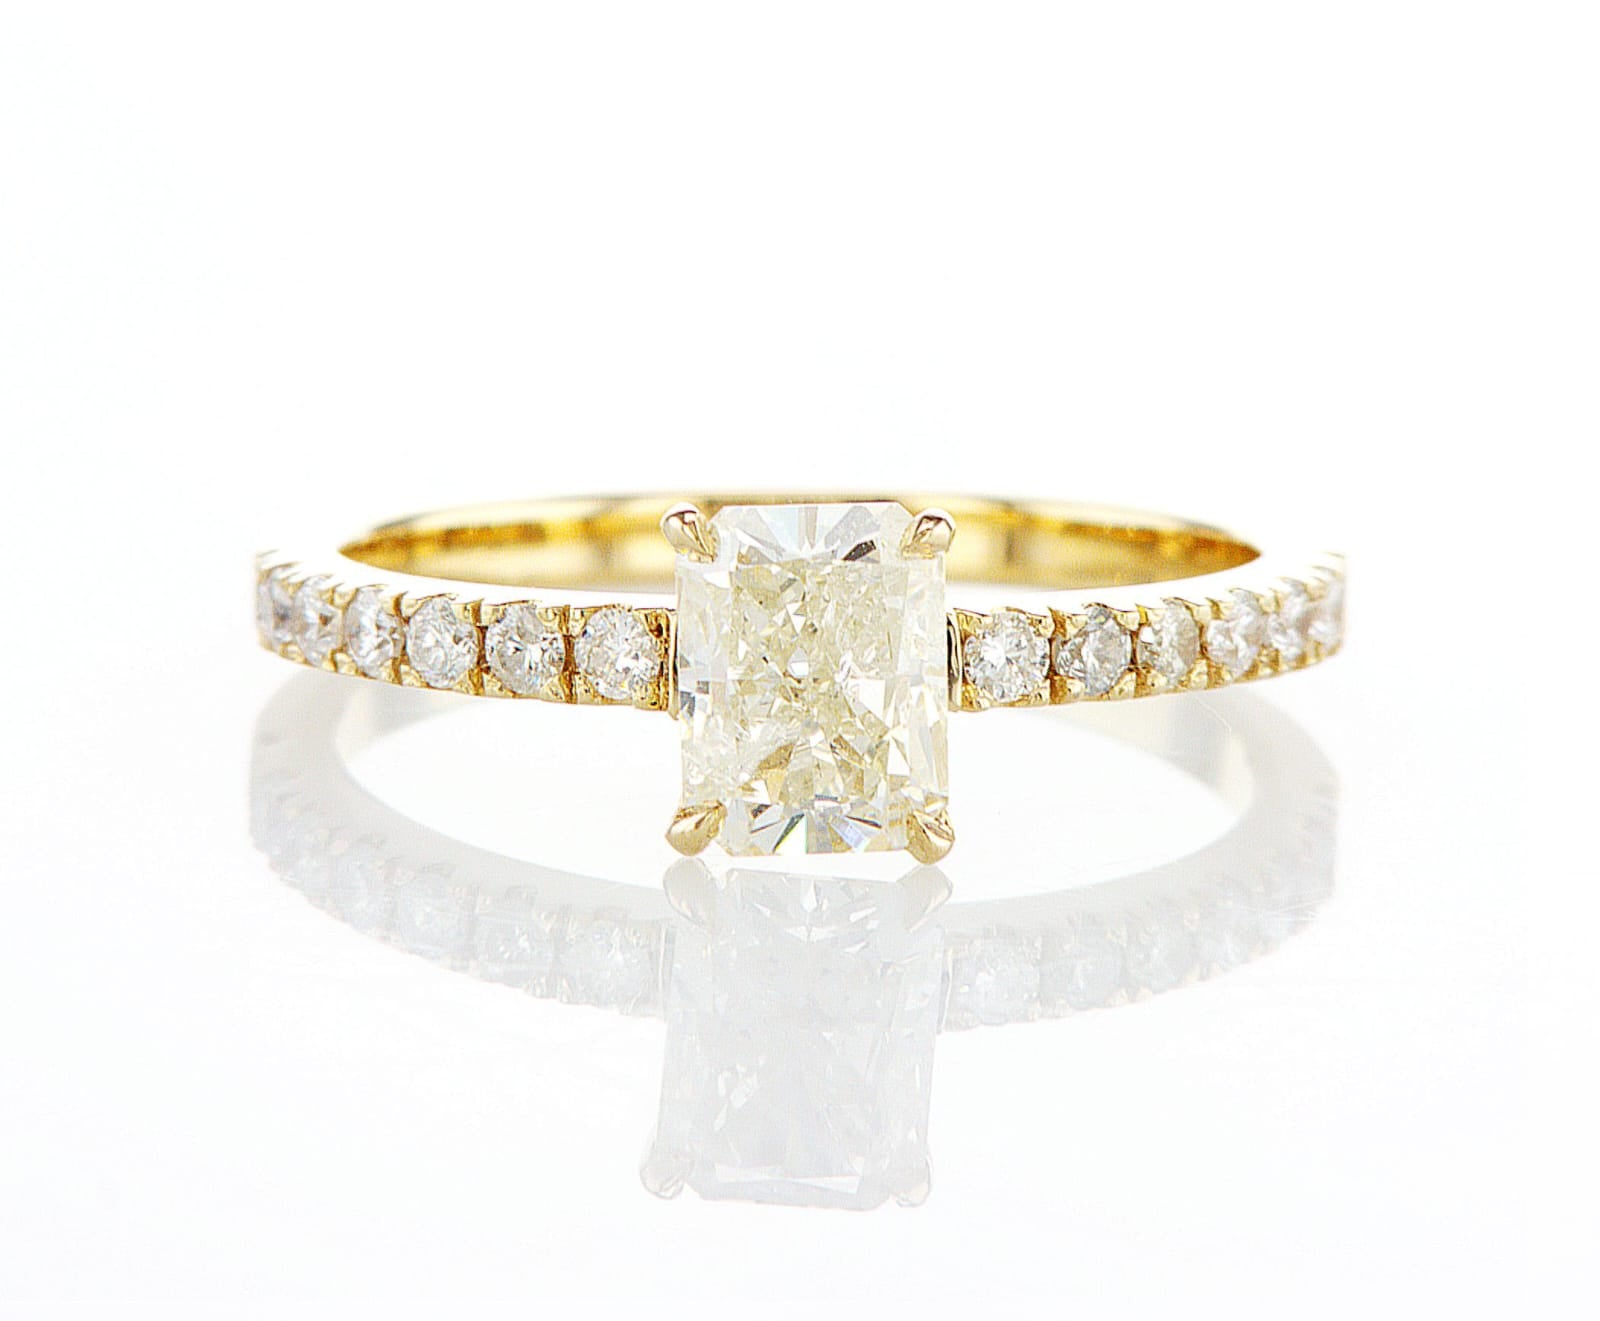 טבעת אירוסין רום Fermond Jewelery